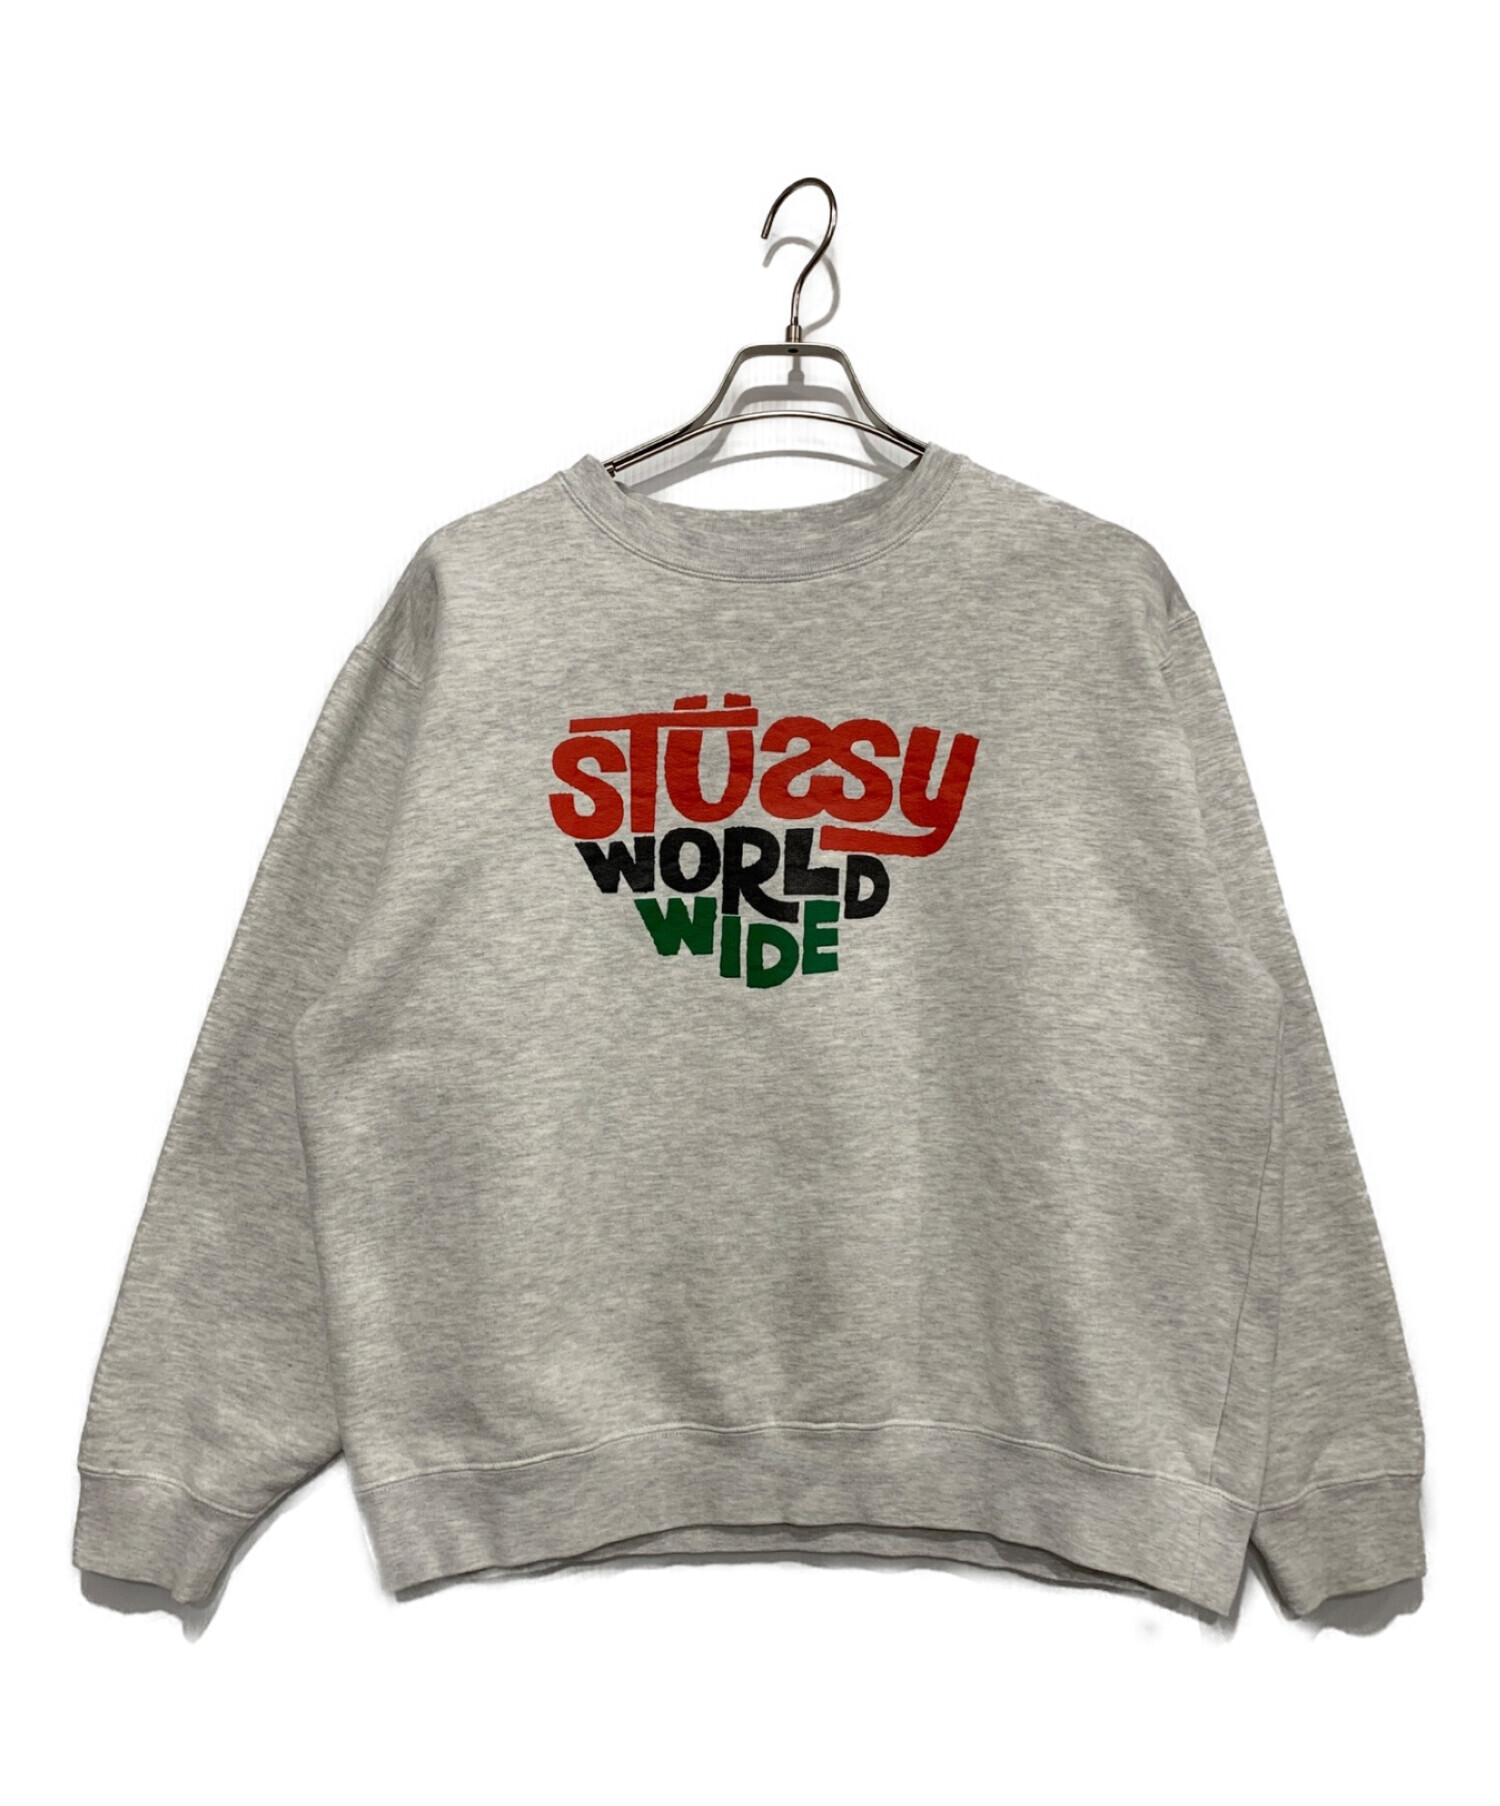 stussy (ステューシー) スウェット ホワイト サイズ:M